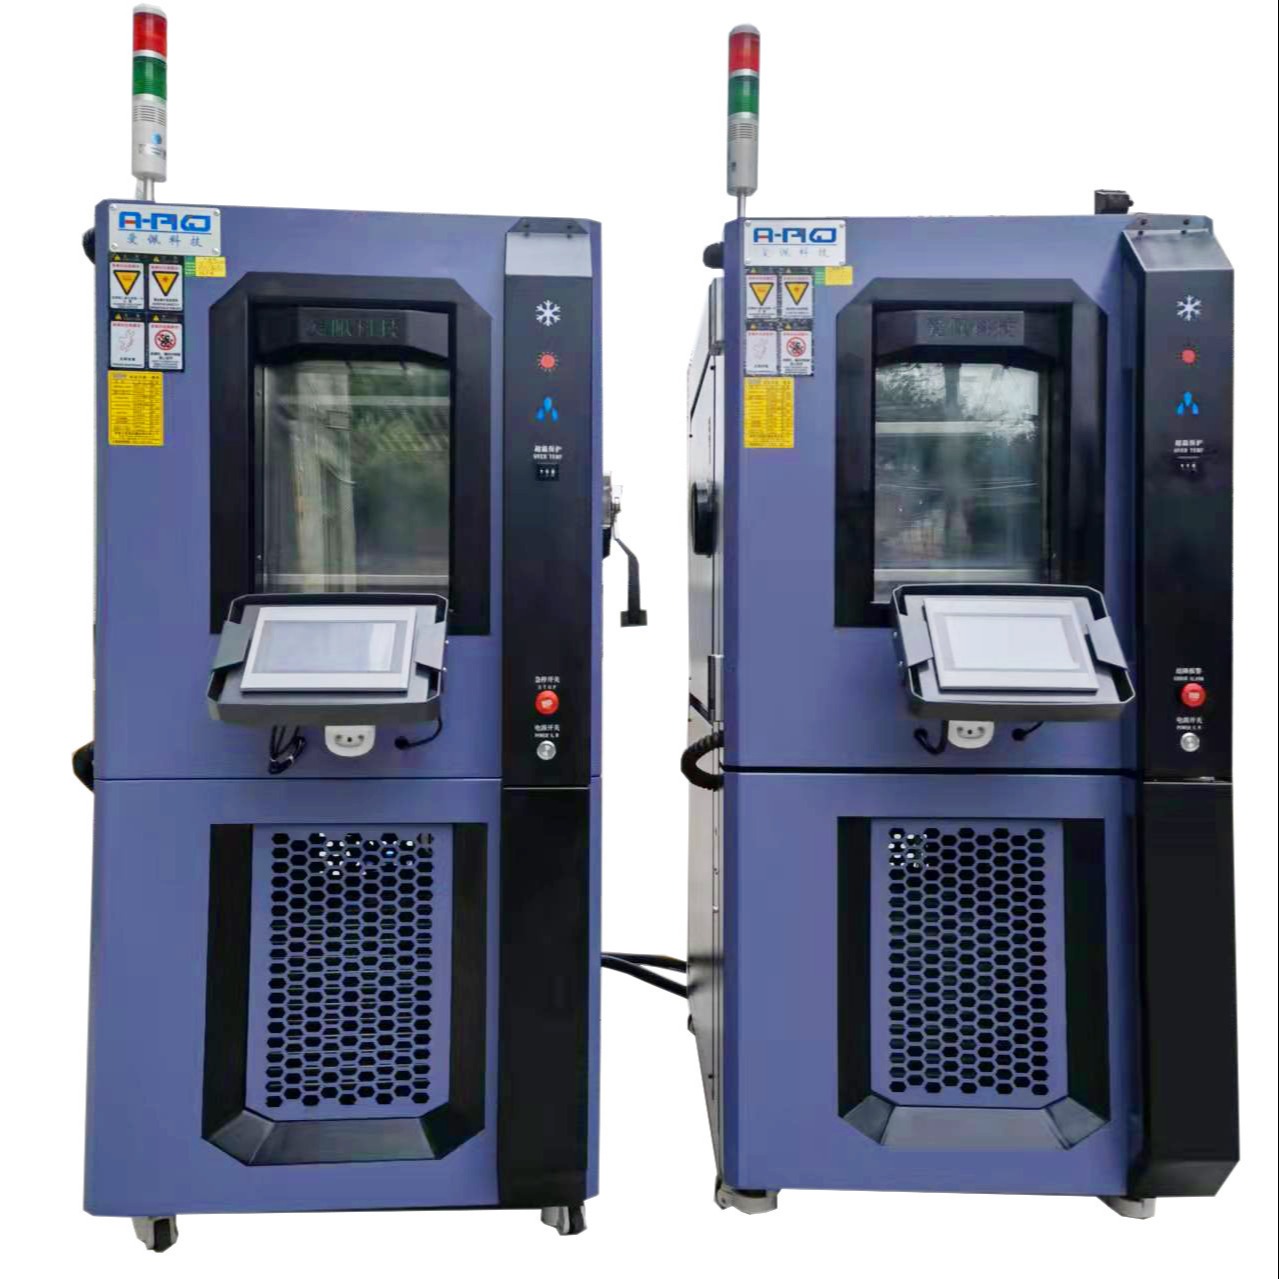 爱佩科技 AP-GD 风岗高低温测试仪器 高低温试验箱 高低温堆码试验箱